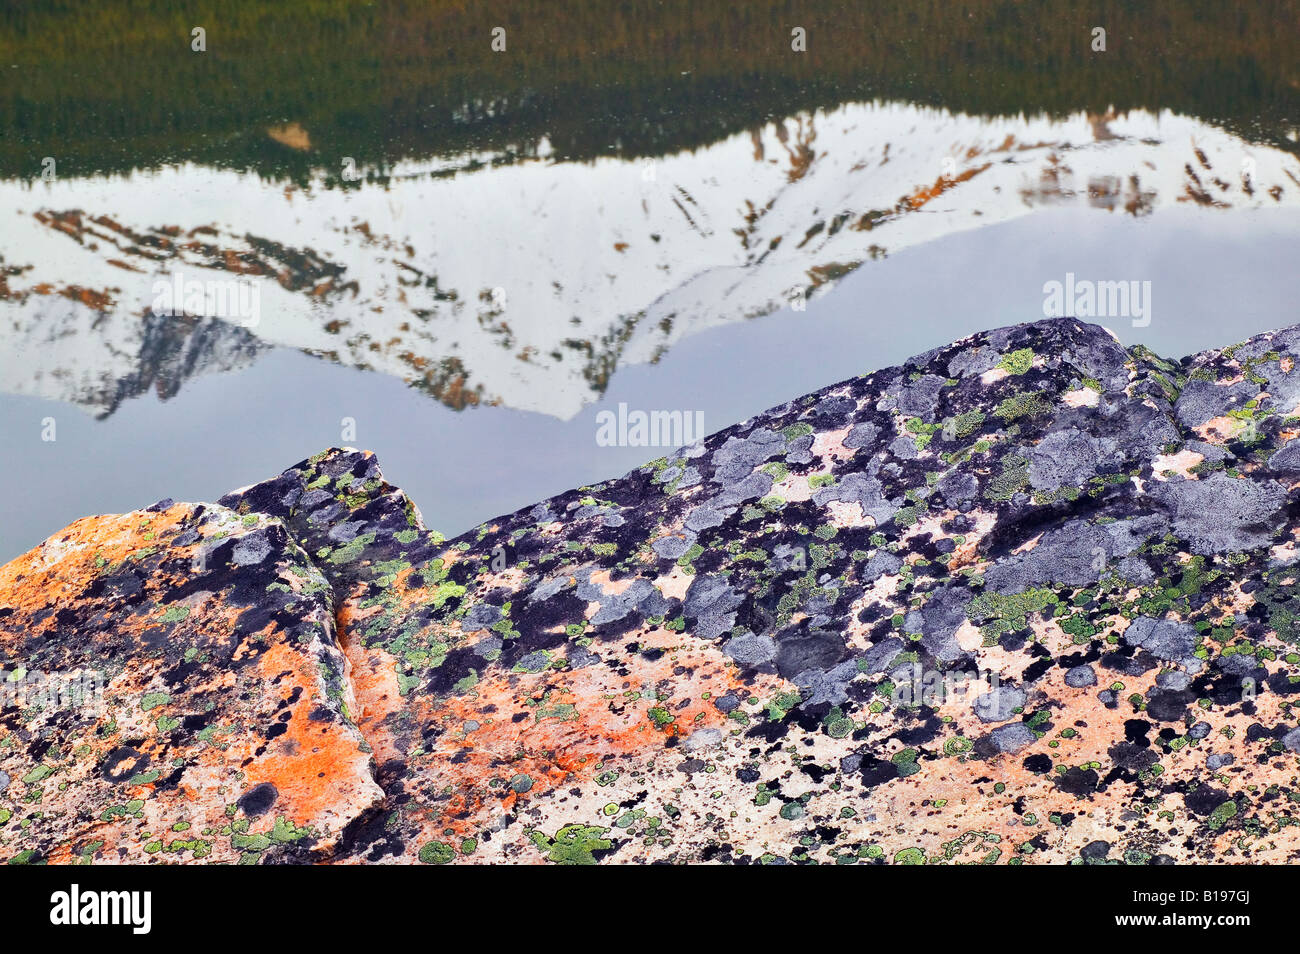 Rocher quartzite avec les lichens, Jasper National Park, Alberta, Canada. Banque D'Images